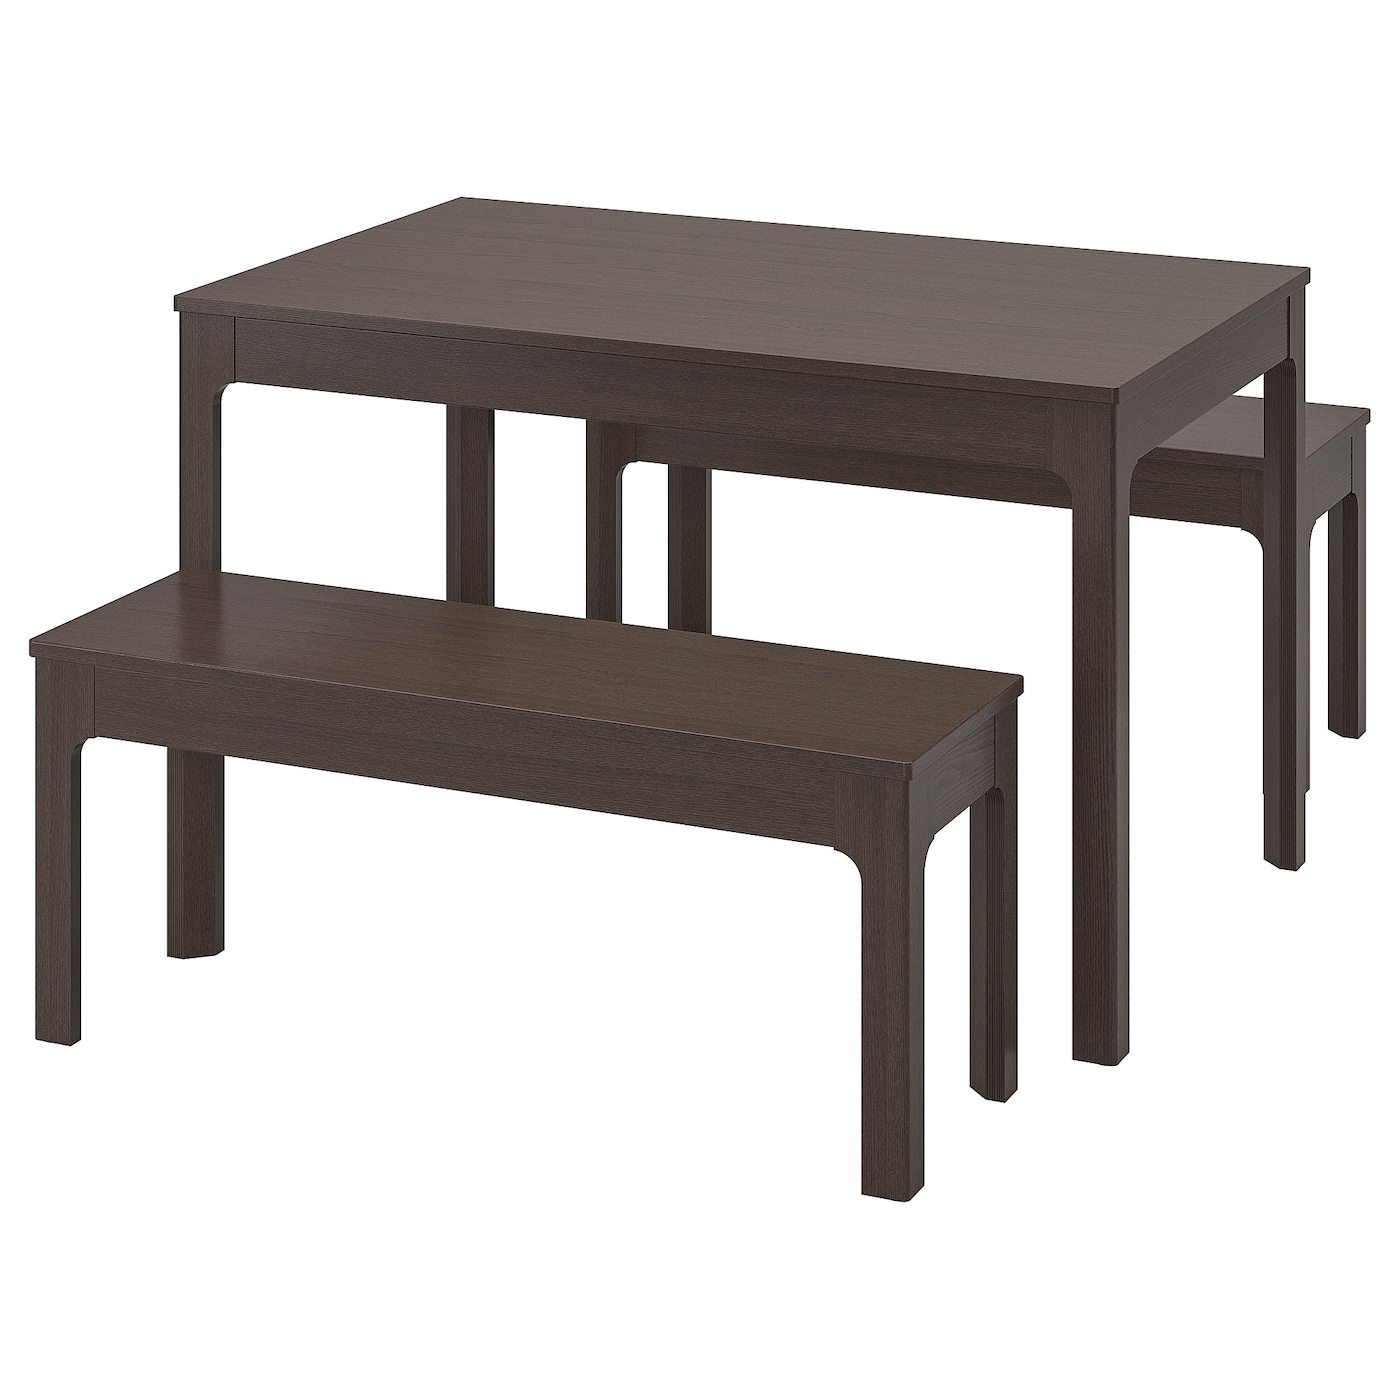 Стол и 2 скамейки - EKEDALEN / EKEDALEN IKEA/ ЭКЕДАЛЕН ИКЕА, 180/120 см, коричневый